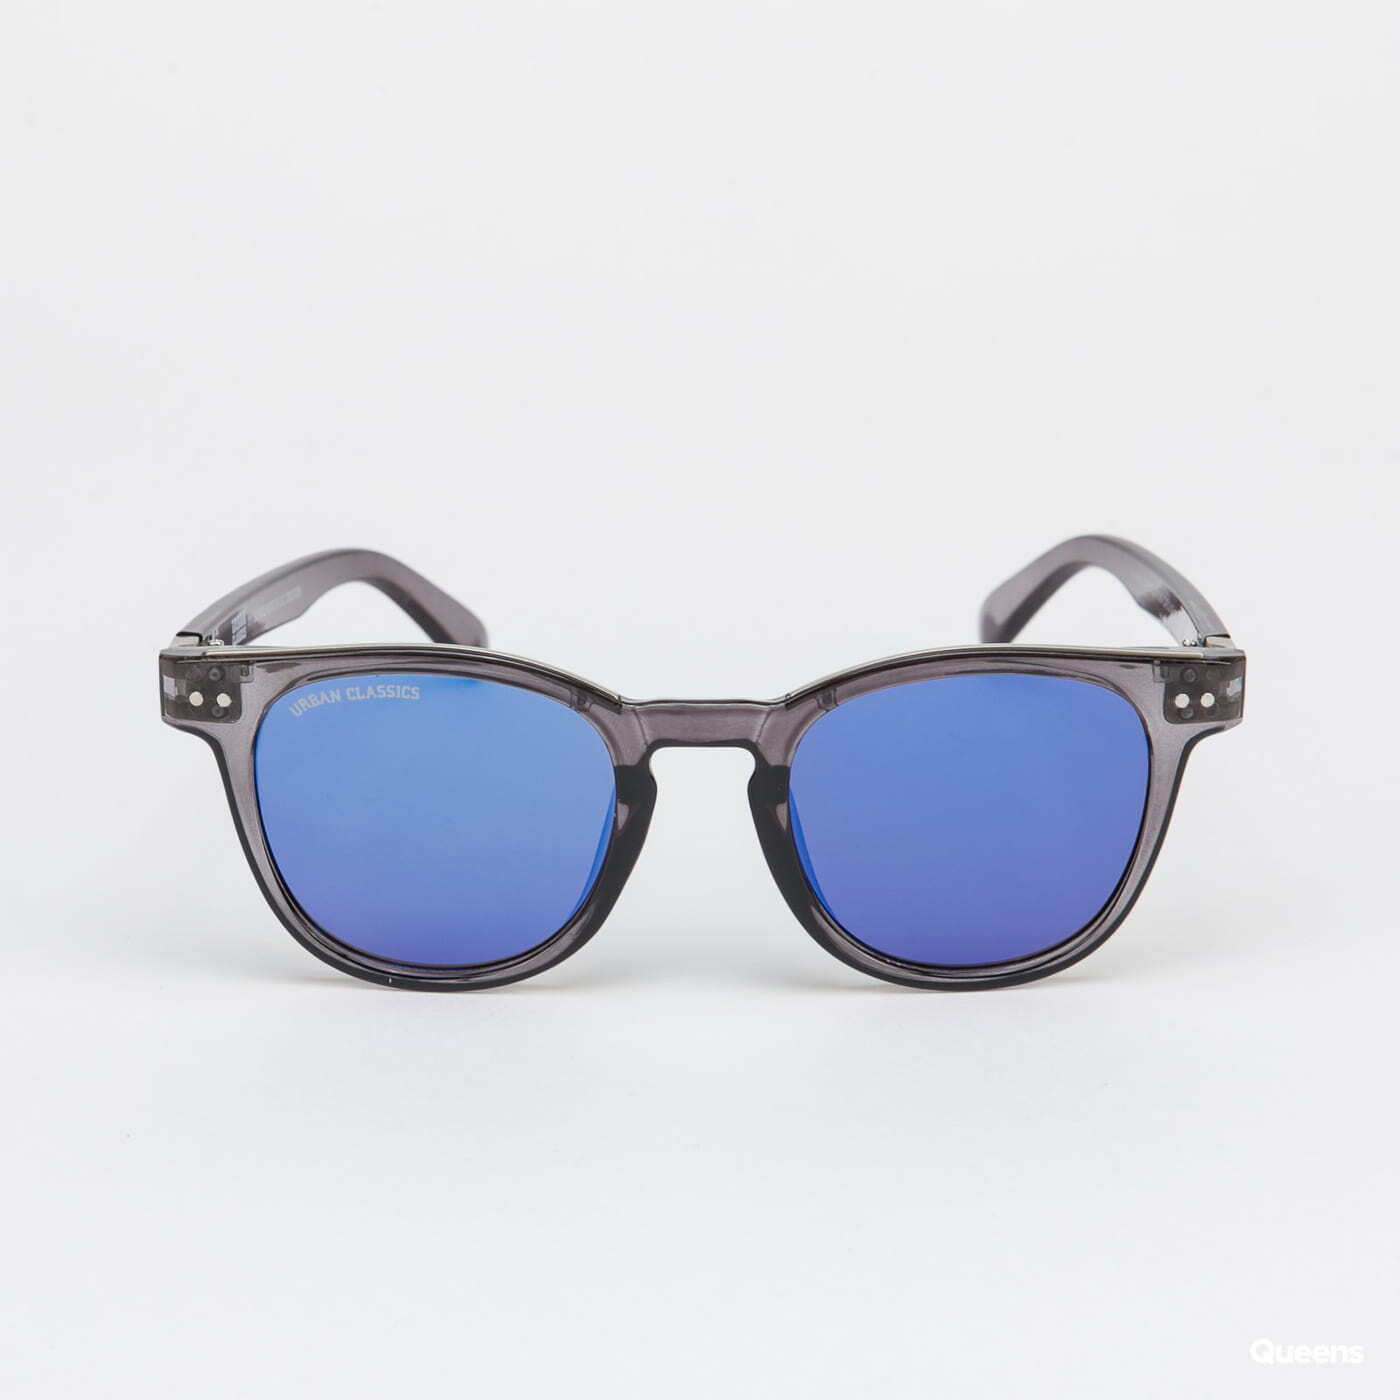 Sunglasses Urban Classics 111 | Sunglasses UC Silver Grey/ Queens